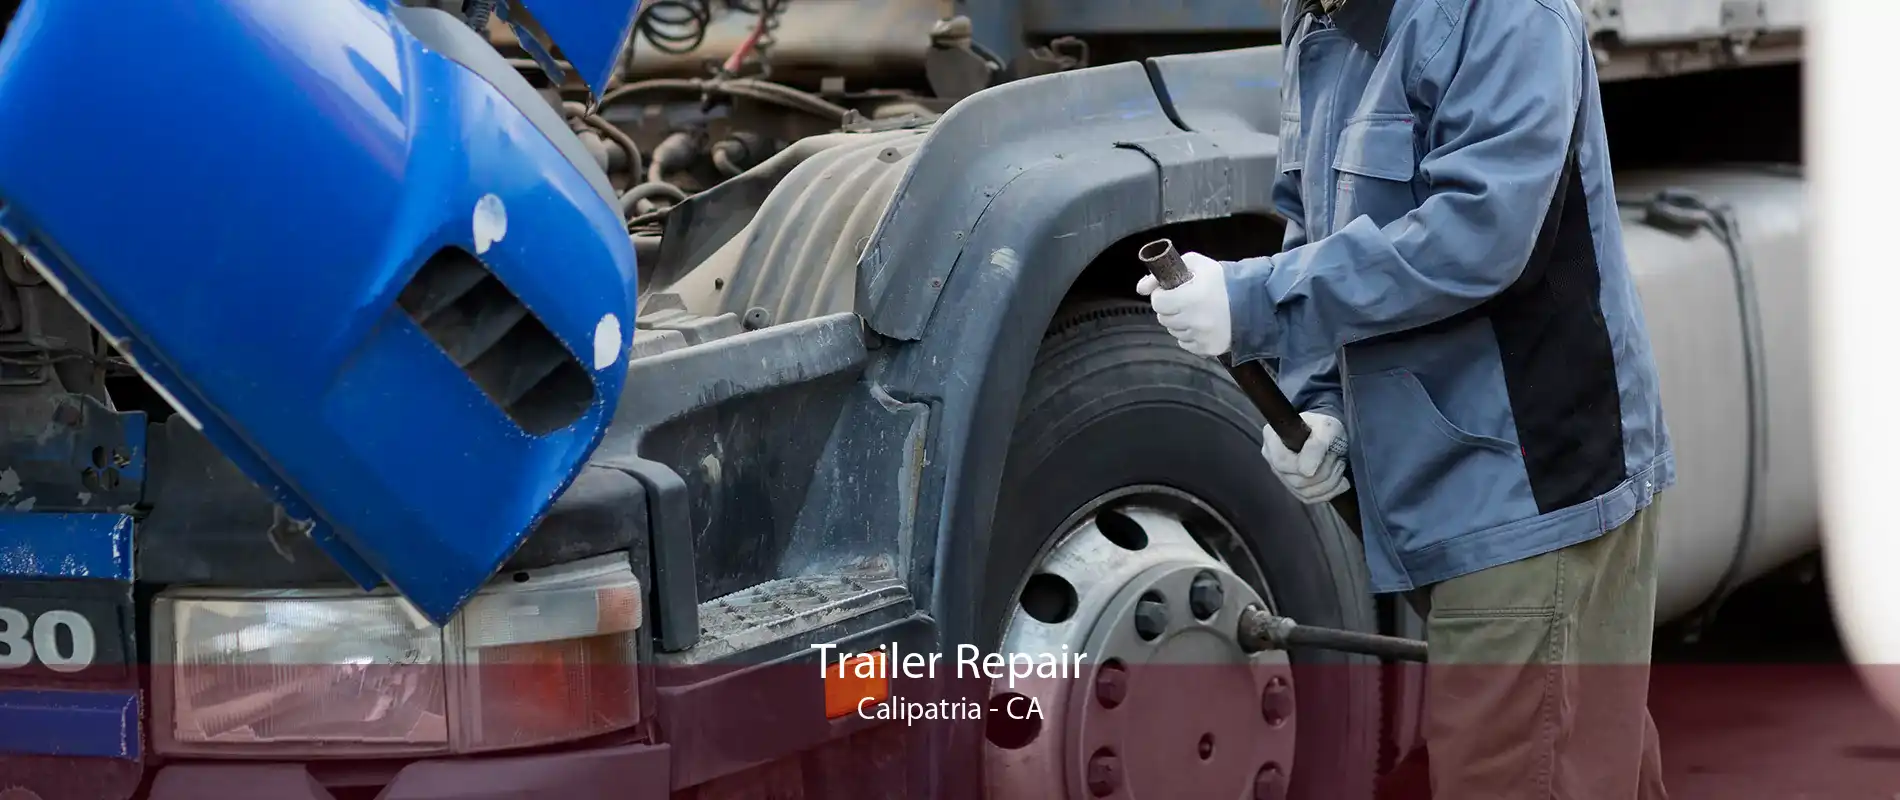 Trailer Repair Calipatria - CA